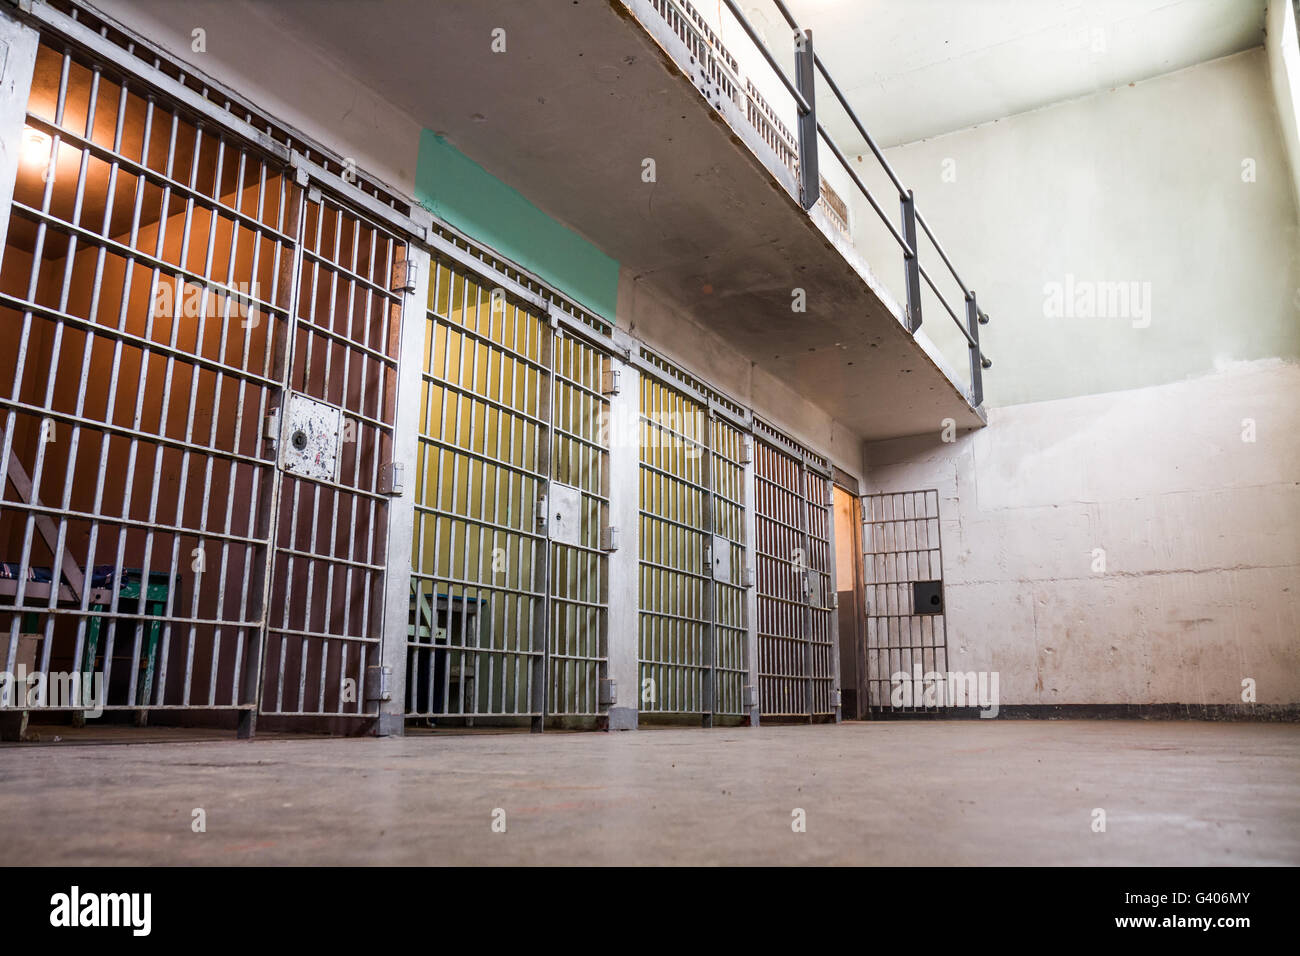 Gefängniszellen alle aufgereiht Stockfoto